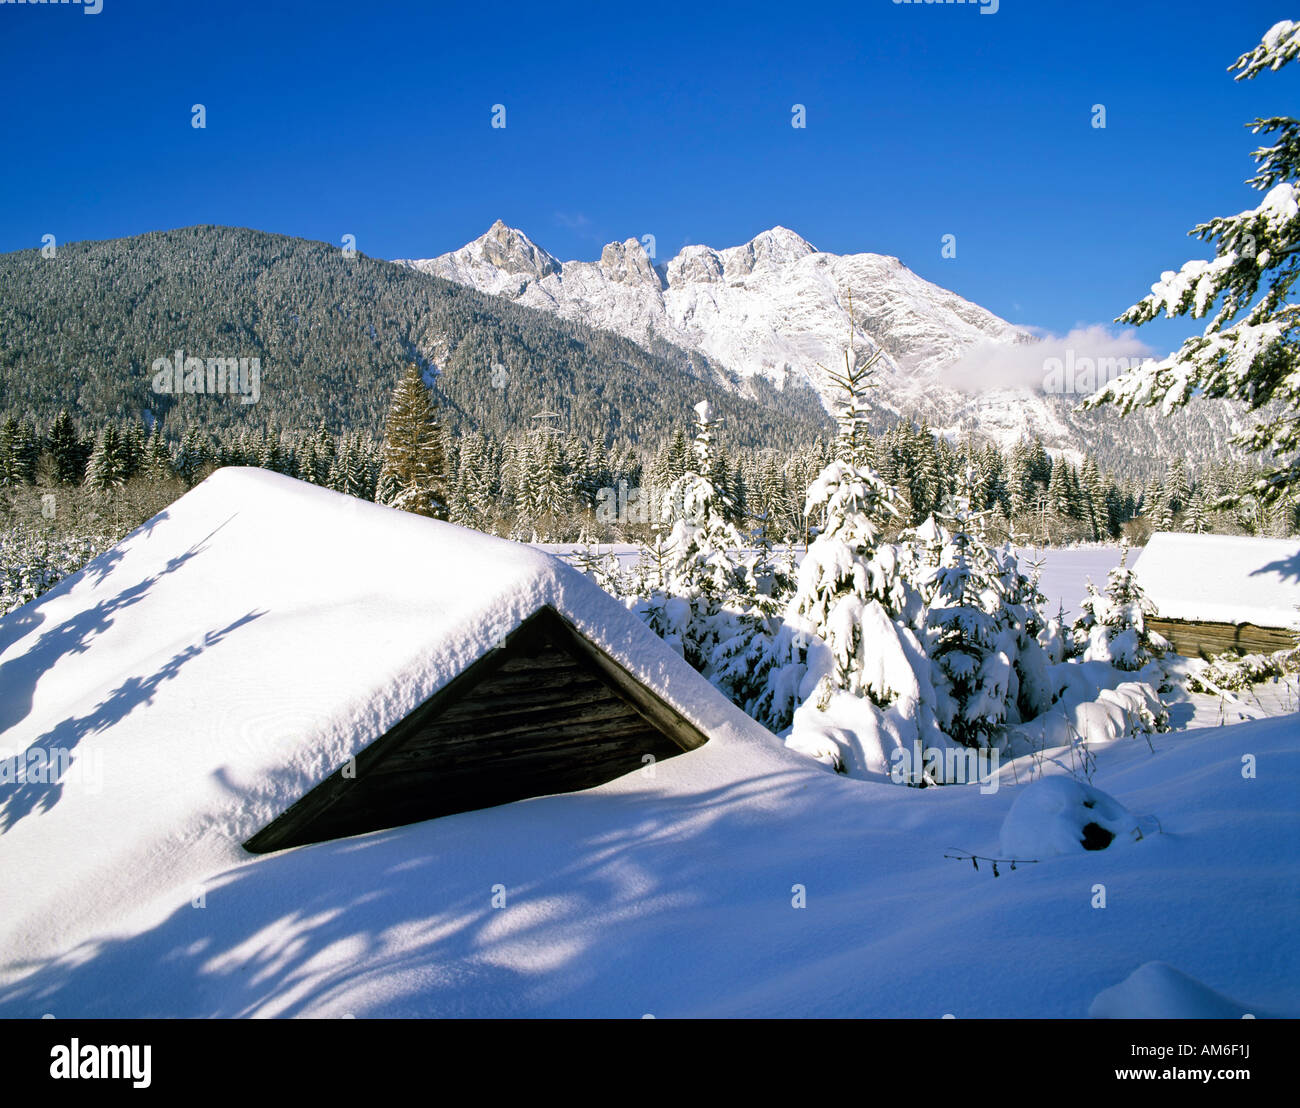 Ahrnspitzen, près de Seefeld, l'hiver, Wettersteingebirge, Tyrol, Autriche Banque D'Images